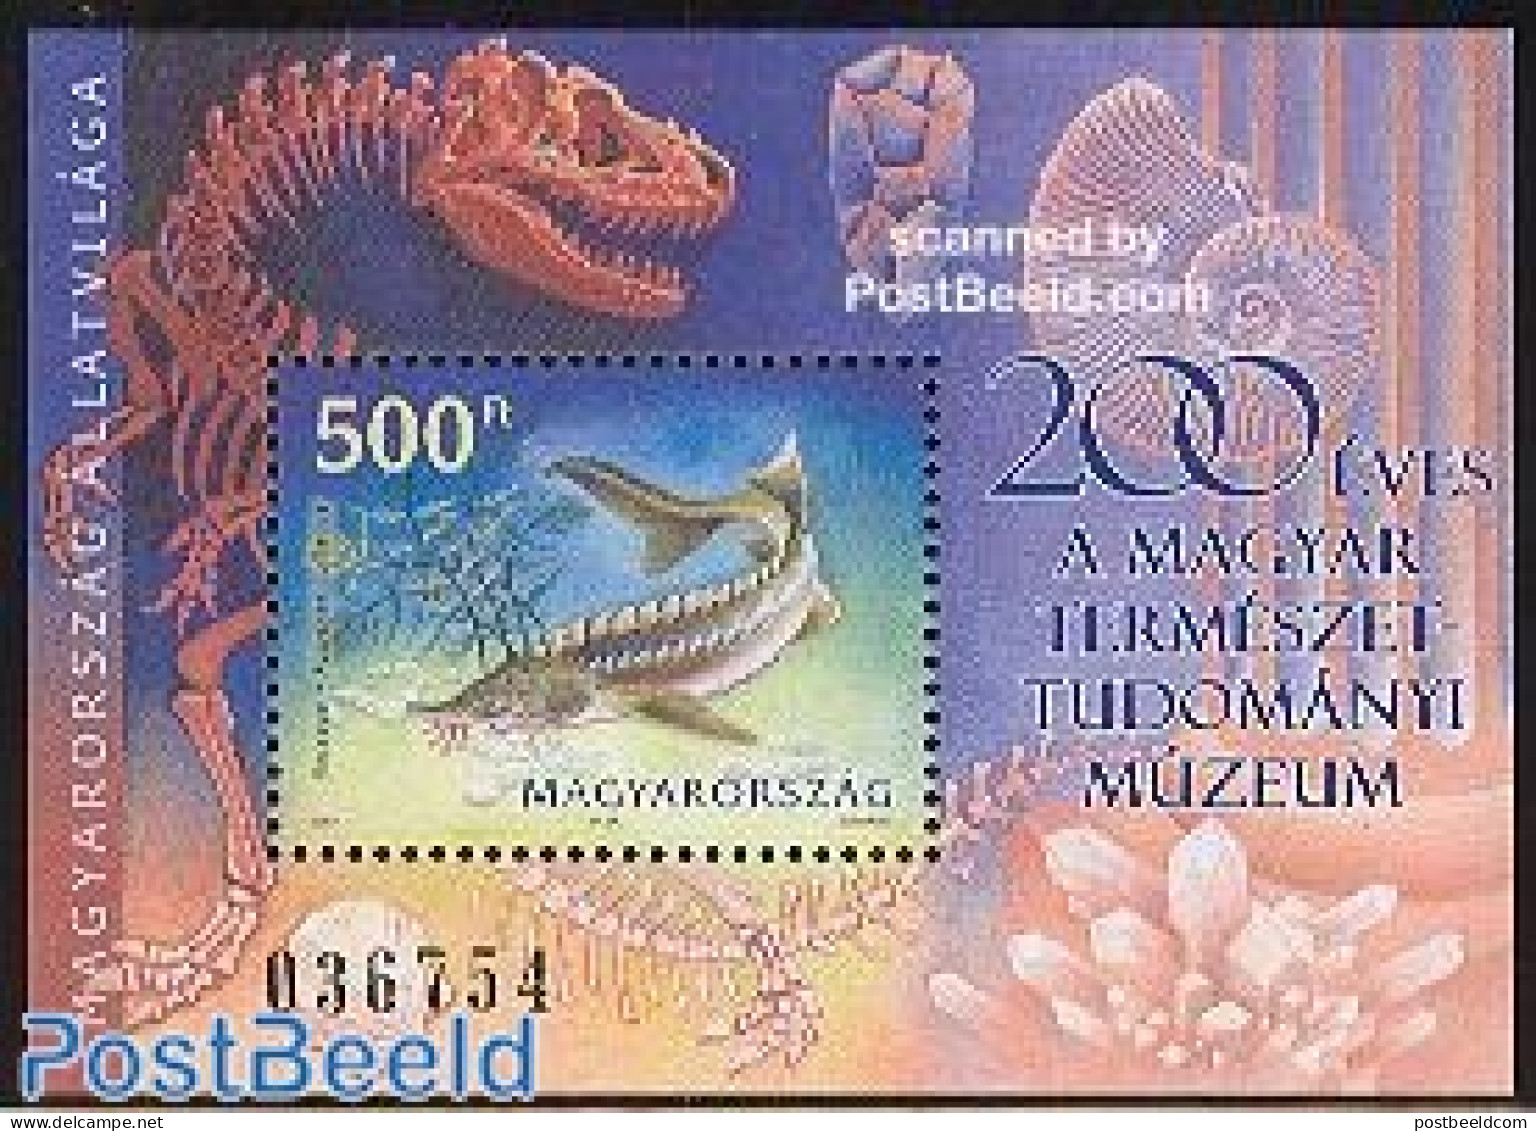 Hungary 2002 Fish S/s, Mint NH, Nature - Fish - Prehistoric Animals - Ungebraucht